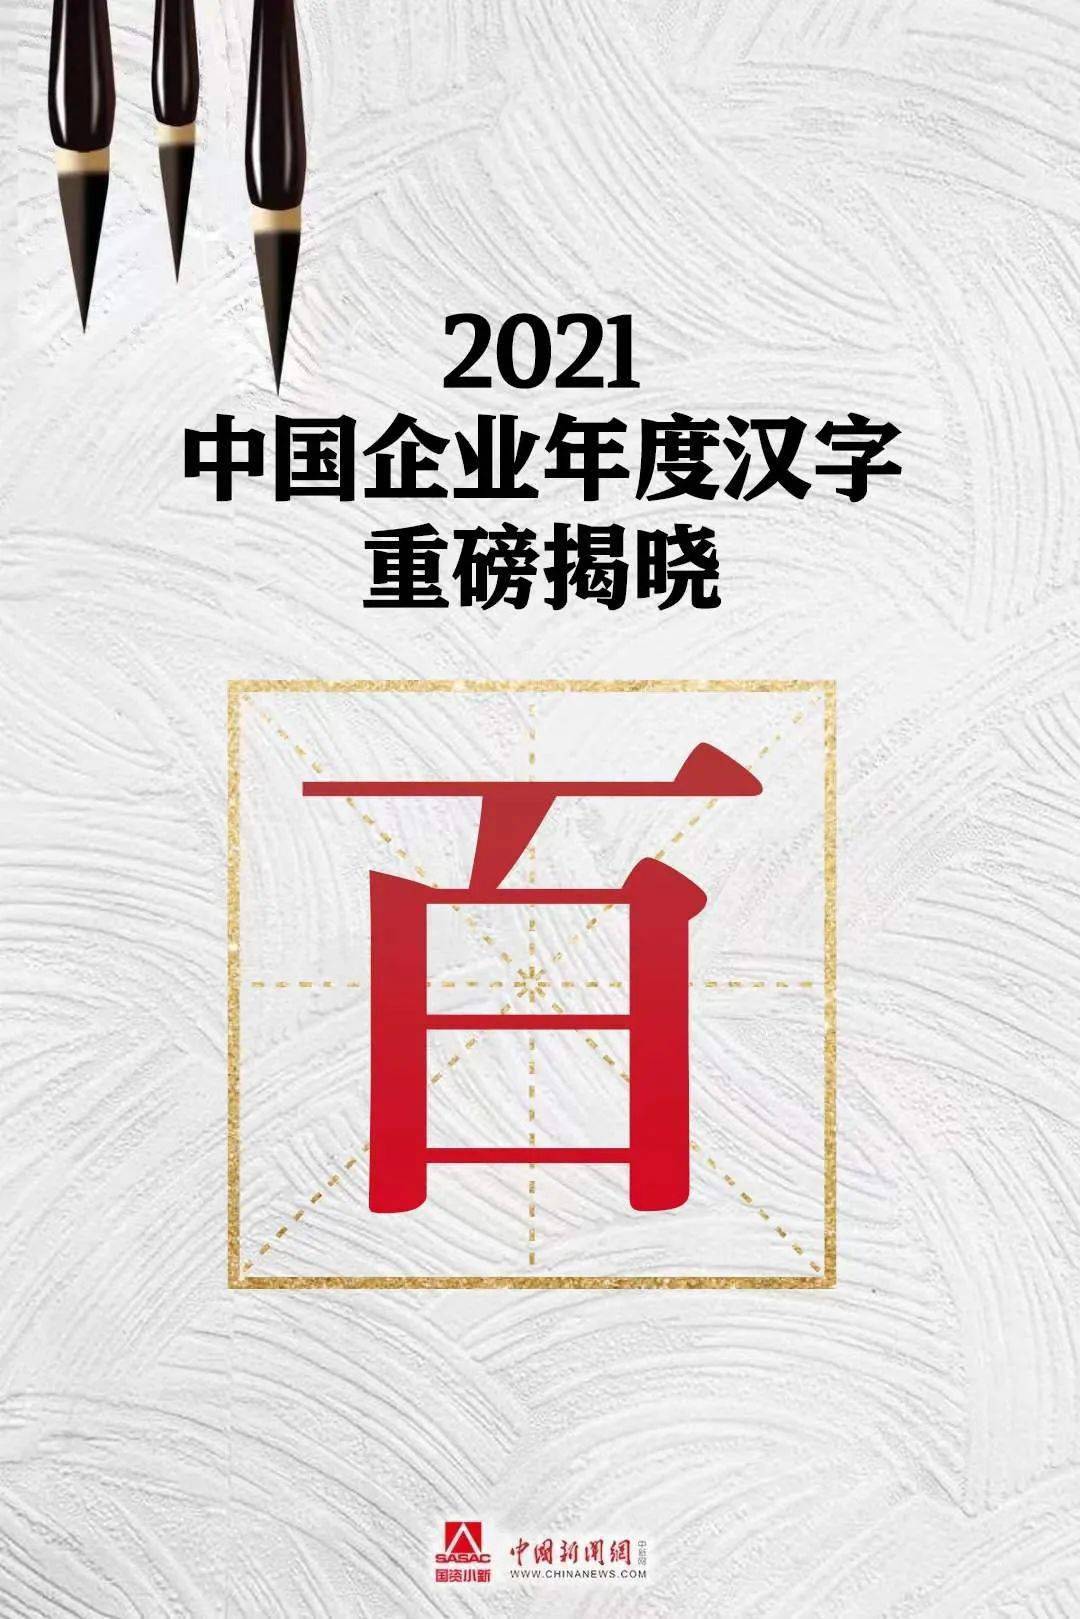 21中国企业年度汉字 百 国务院国资委 网友 世界